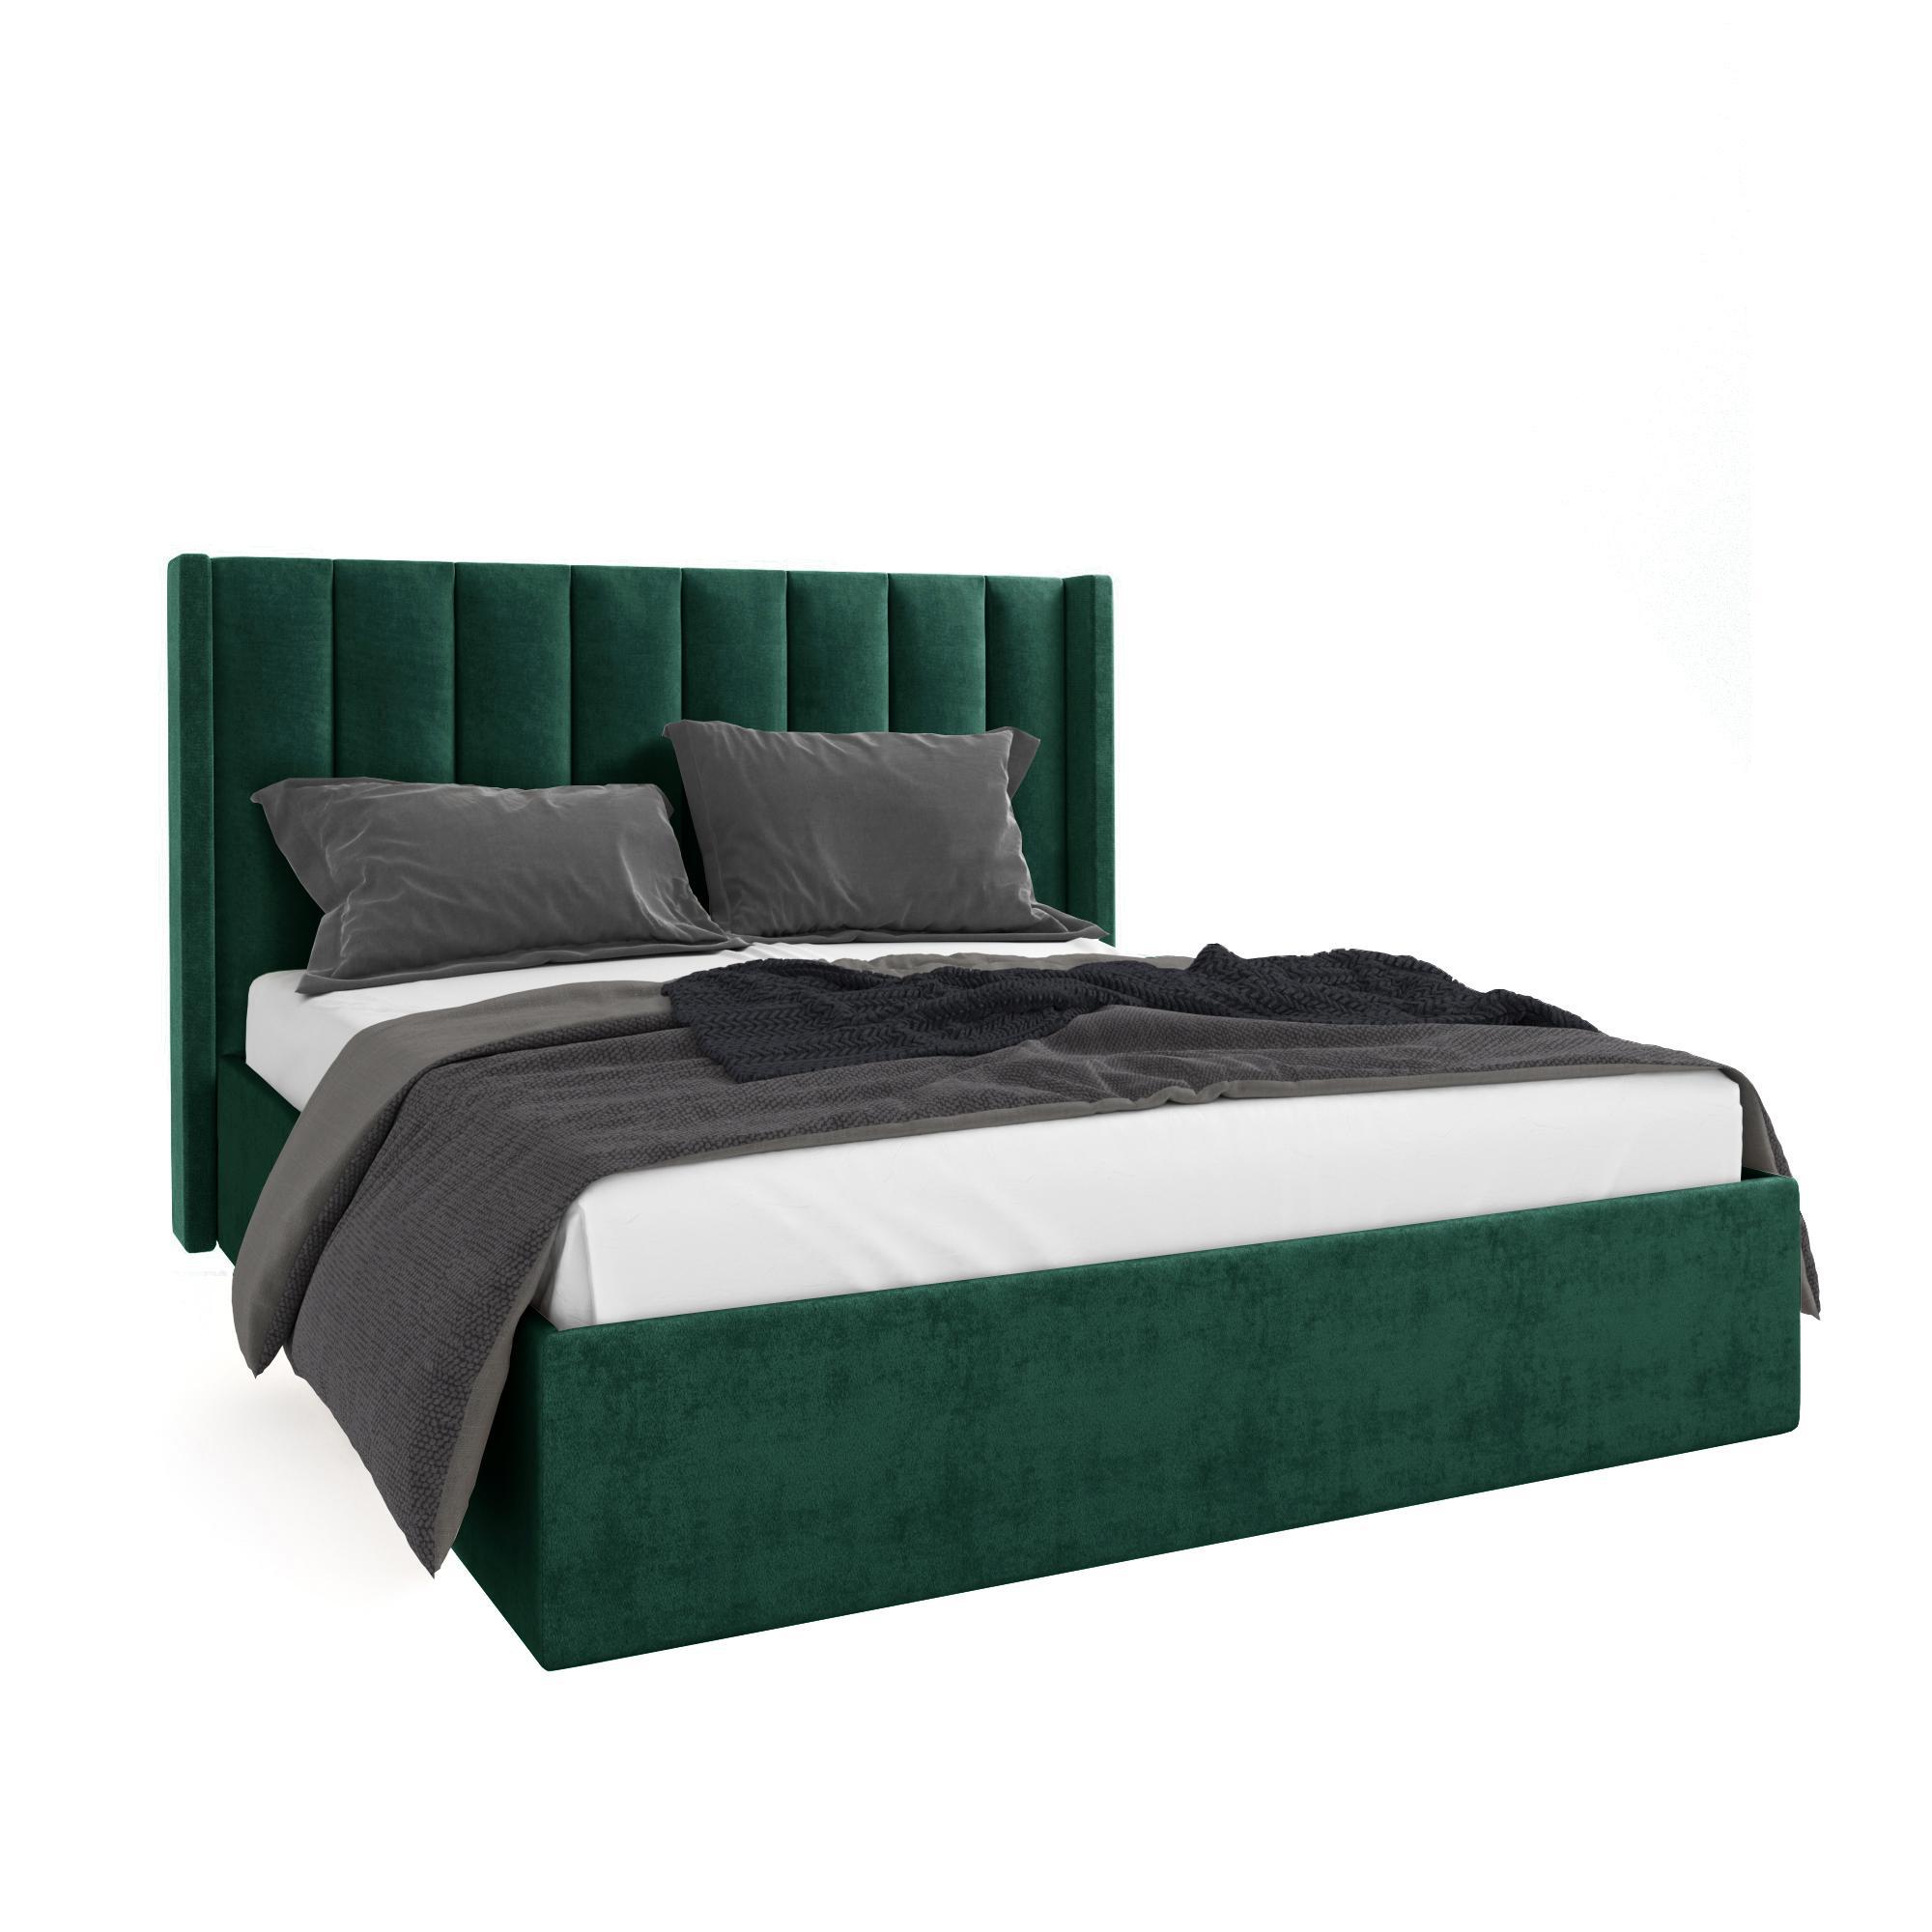 Кровать Жаклиз зеленая 160х200 изображение товара